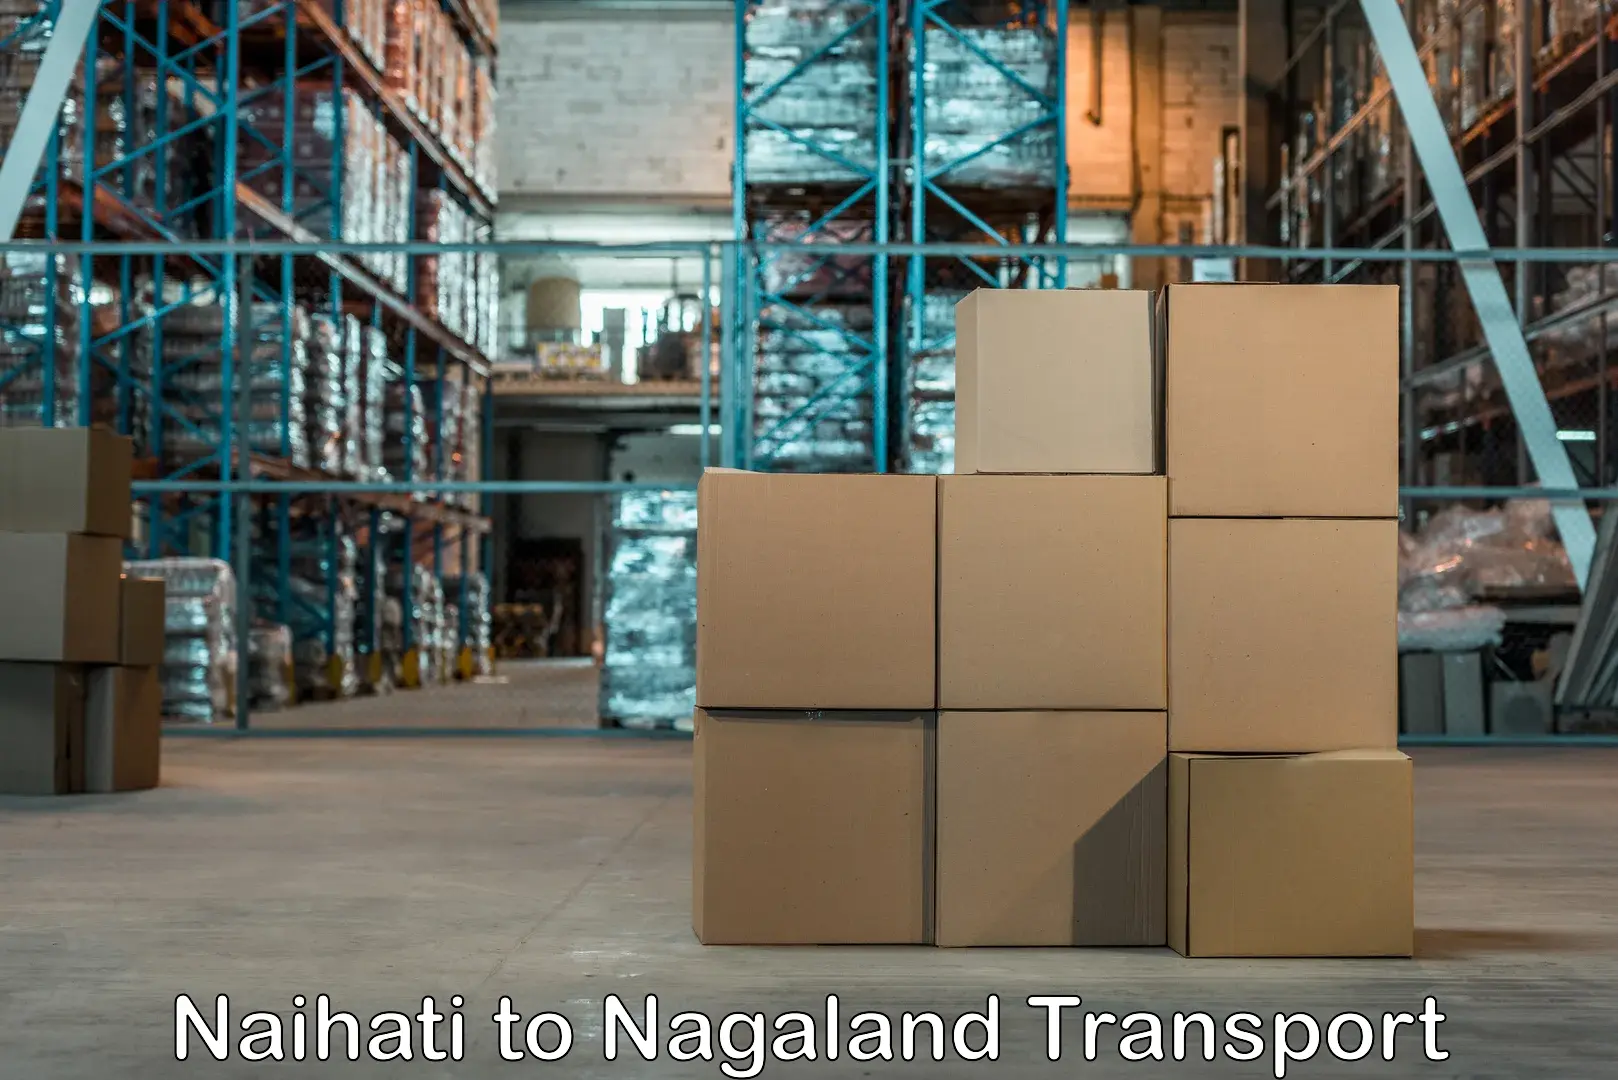 Cycle transportation service Naihati to Nagaland